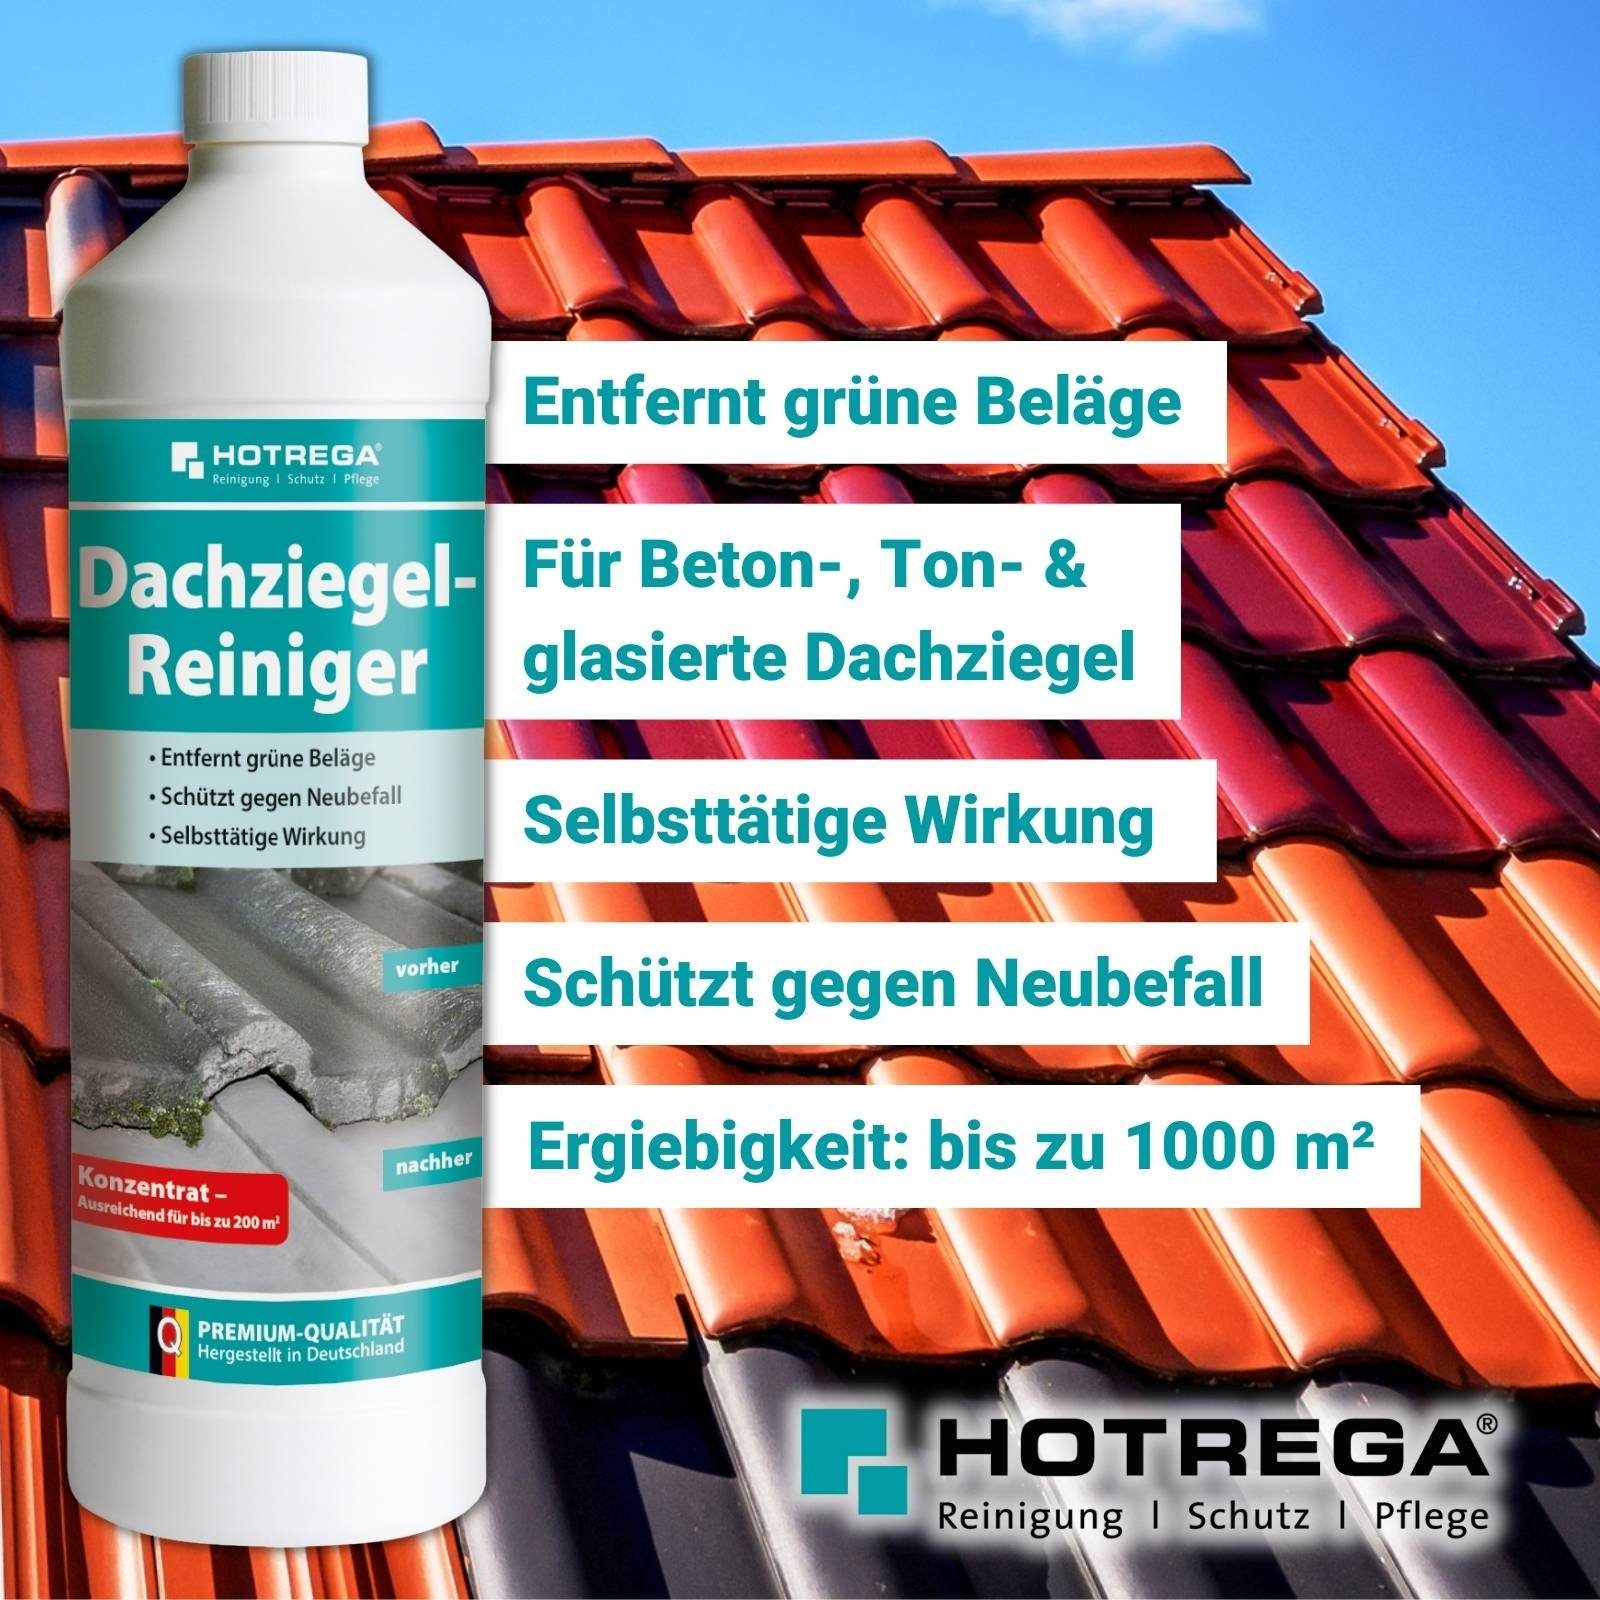 Grünbelagentferner 5x1L Reiniger HOTREGA® Reinigungskonzentrat Messbecher Druckspritze + Dachziegel